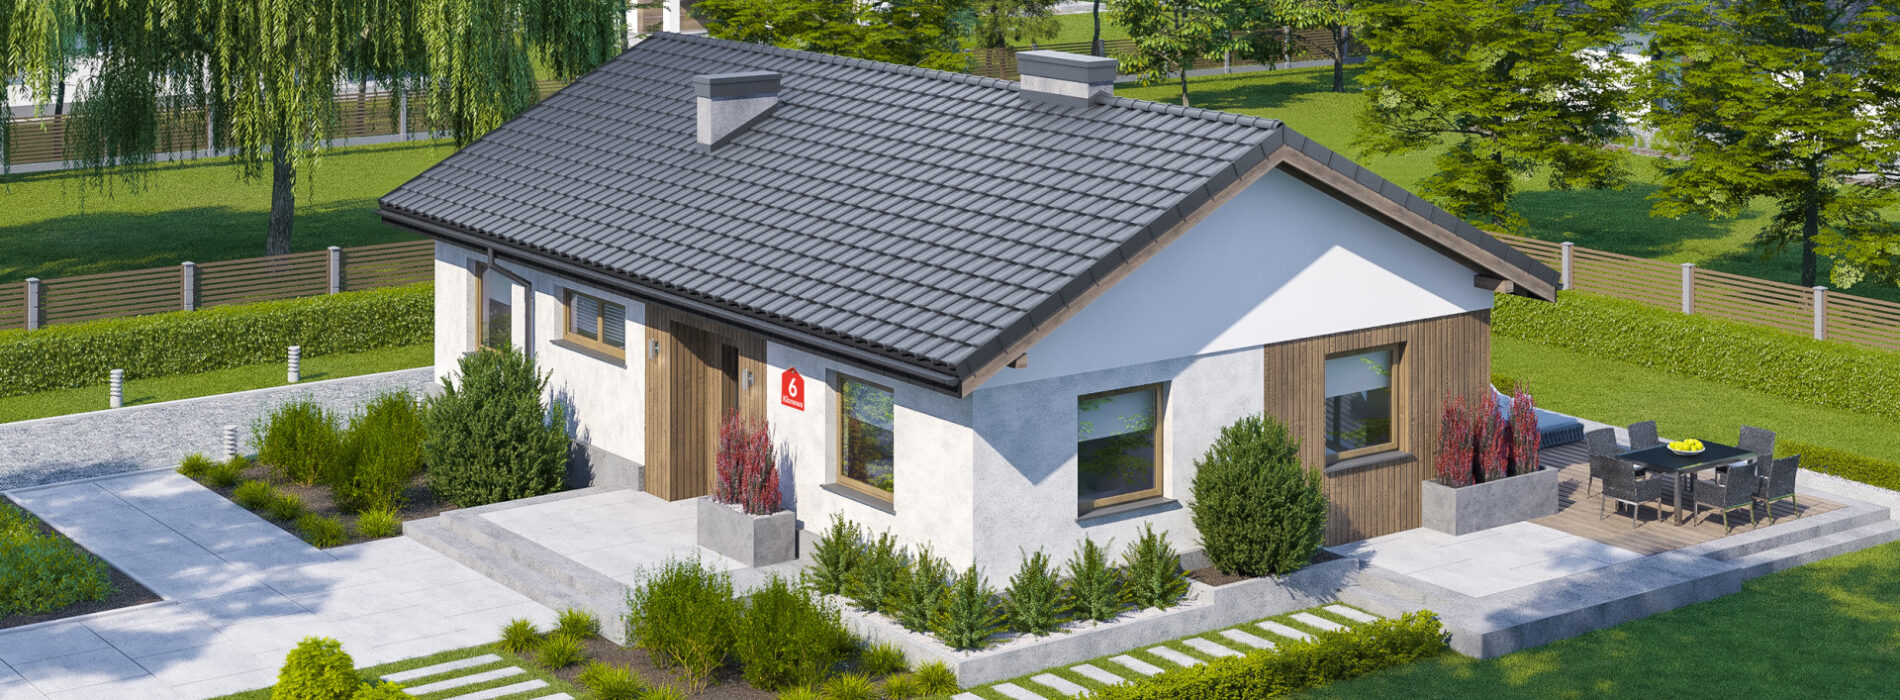 Prosty dach – tańsza i szybsza budowa. Dlaczego warto wybierać projekty domów z dachem dwuspadowym?